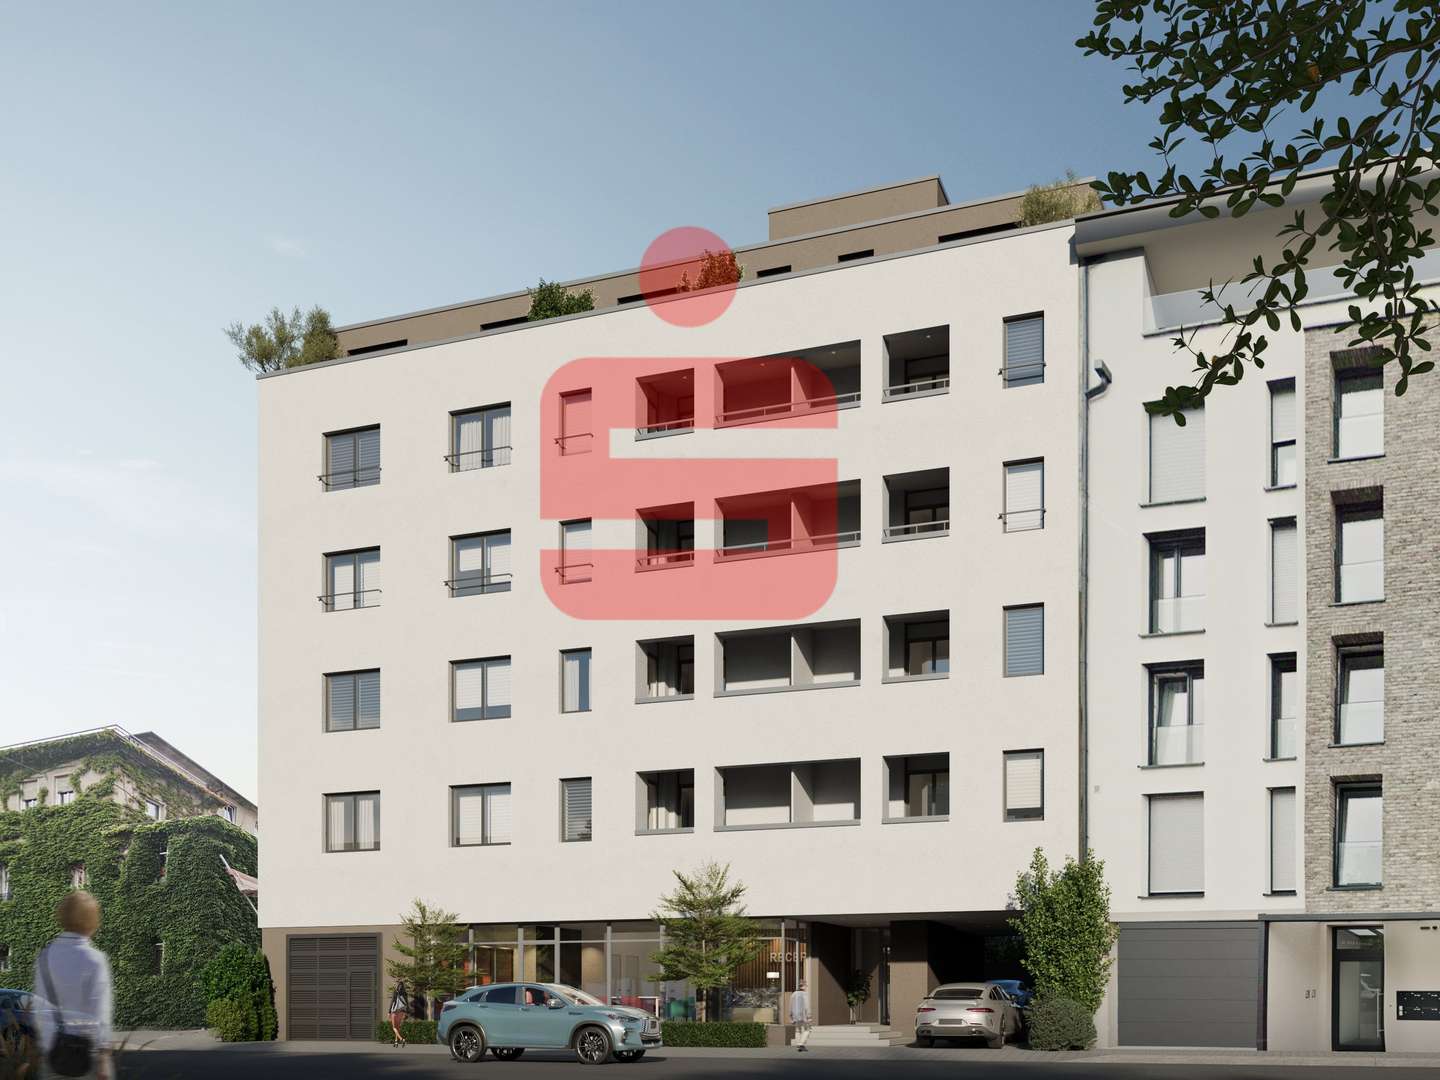 null - Etagenwohnung in 67433 Neustadt mit 55m² kaufen